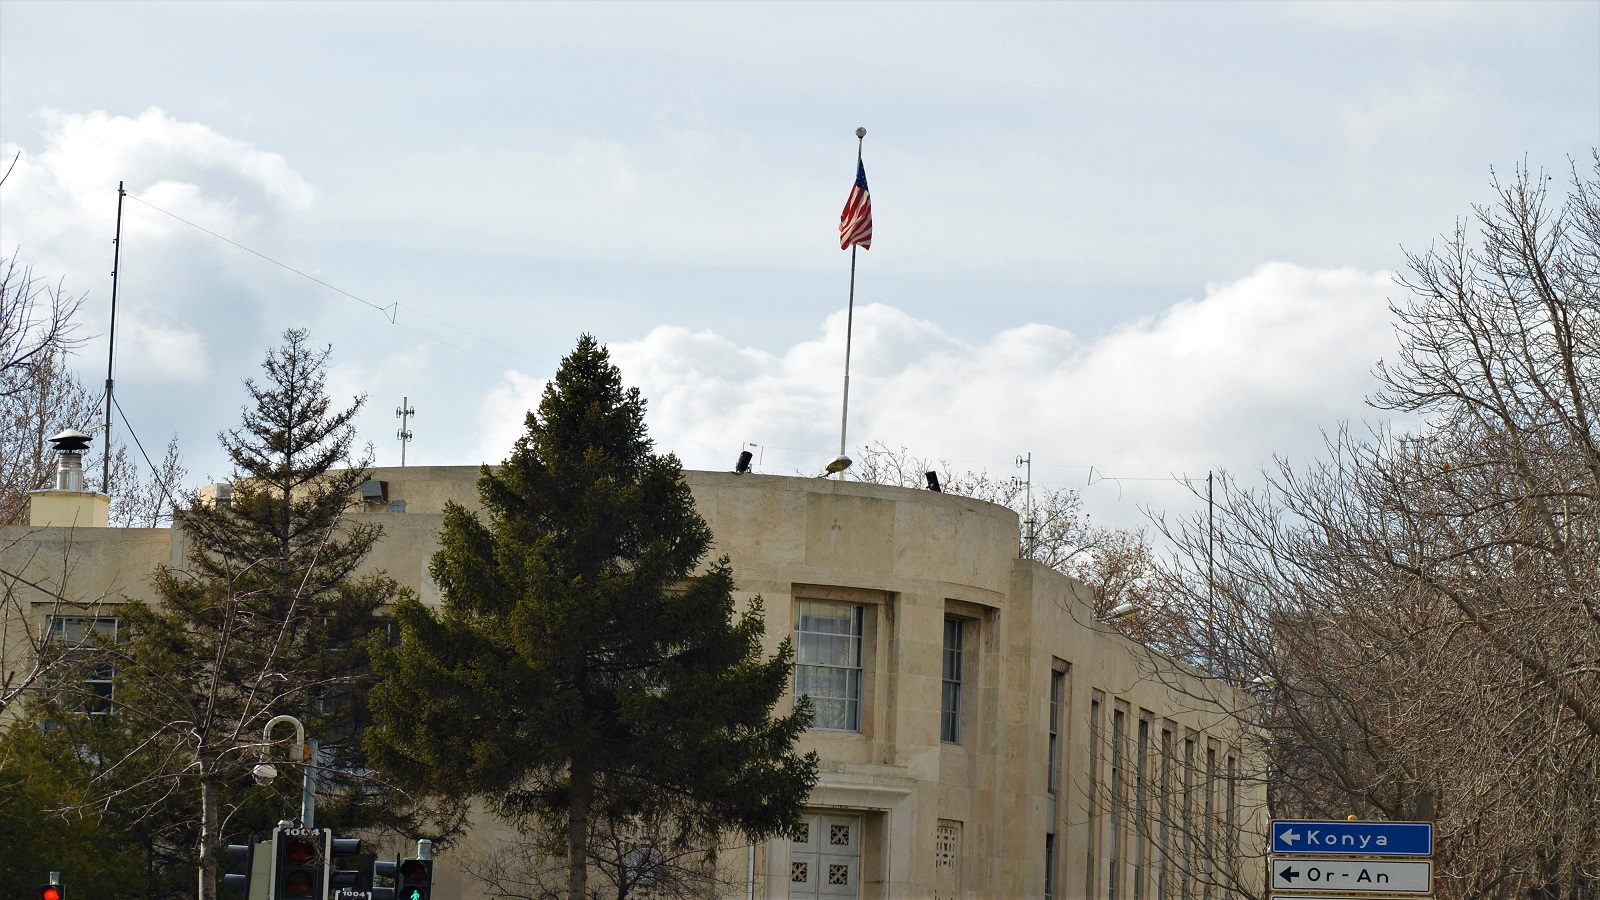 السفارة الأميركية في تركيا توقف خدماتها..خوفا من الإرهاب